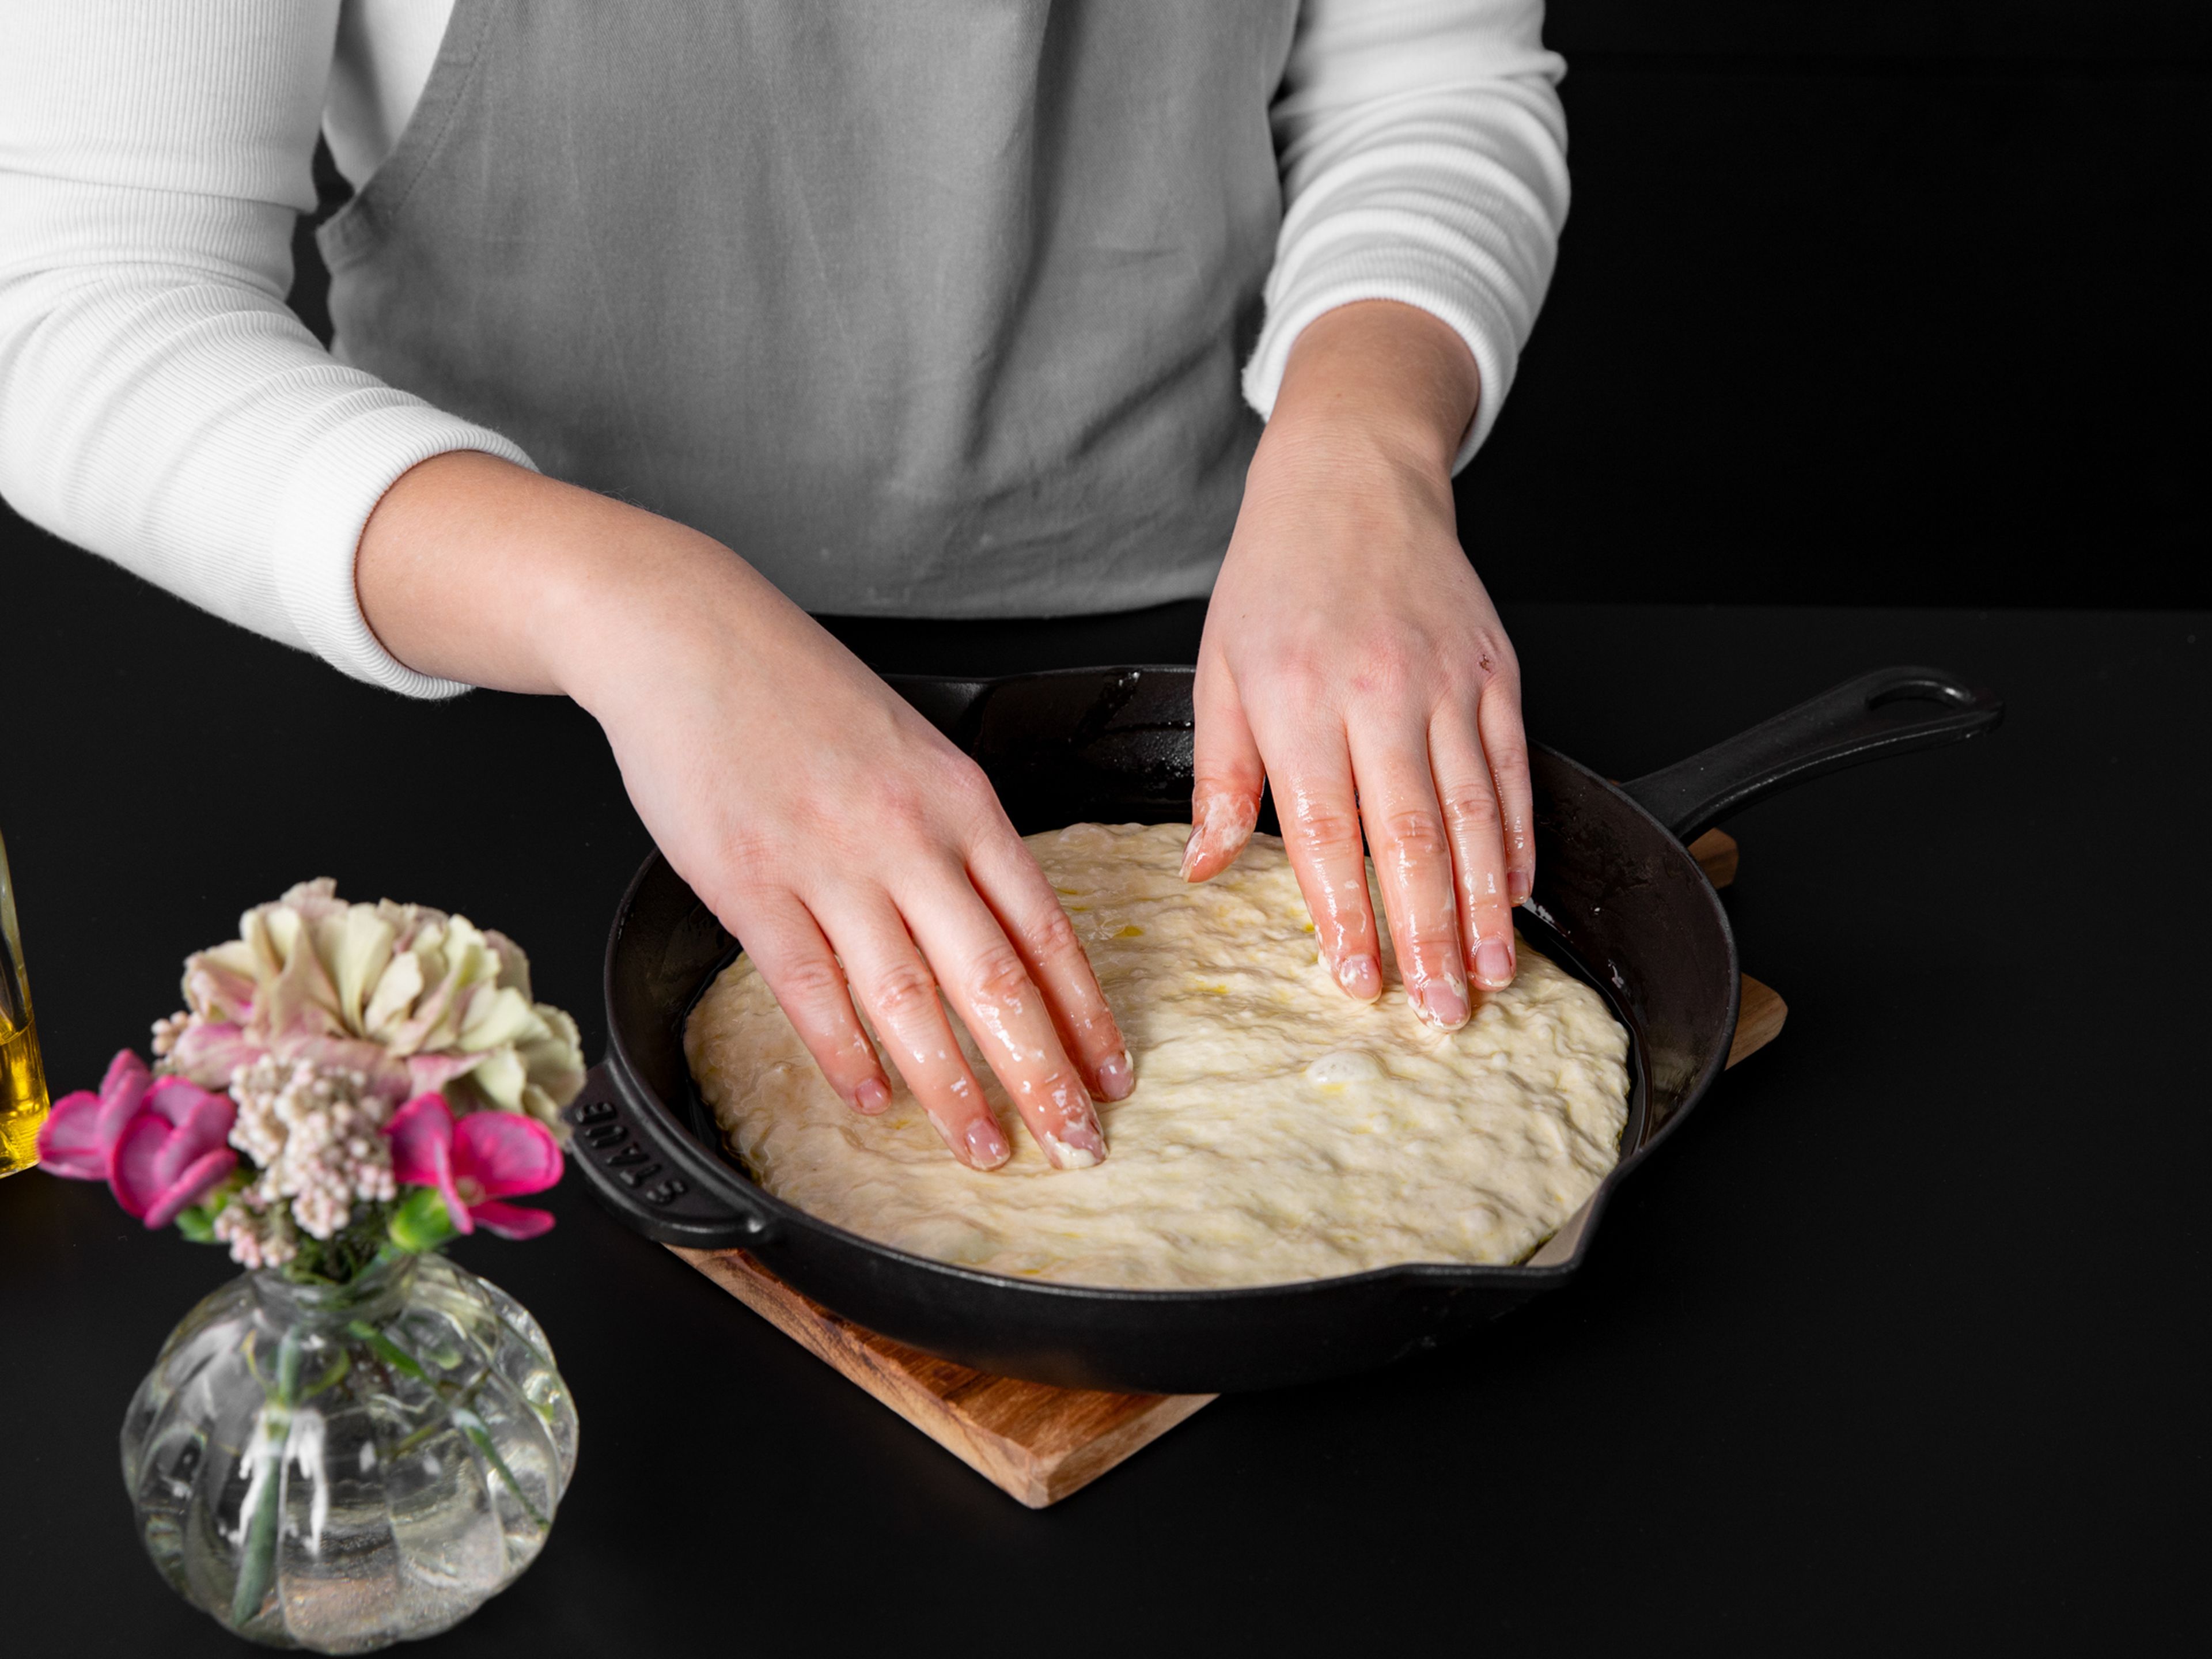 Den Ofen auf 250°C vorheizen. Gib etwas Olivenöl in die Gusspfanne. Fette auch die Seiten der Pfanne mit einem Gummispatel oder deinen Händen ein. Gib eine Hälfte des Teiges in die Pfanne. Falte den Teig einige Male von den Seiten zur Mitte hin ein und drehe in dann um, sodass die gefaltete Seite an der Unterseite ist. Verteile den Teig gleichmäßig in der Pfanne, indem du ihn mit deinen Fingern in Form drückst. Für ca. 1 Stunde ruhen lassen.